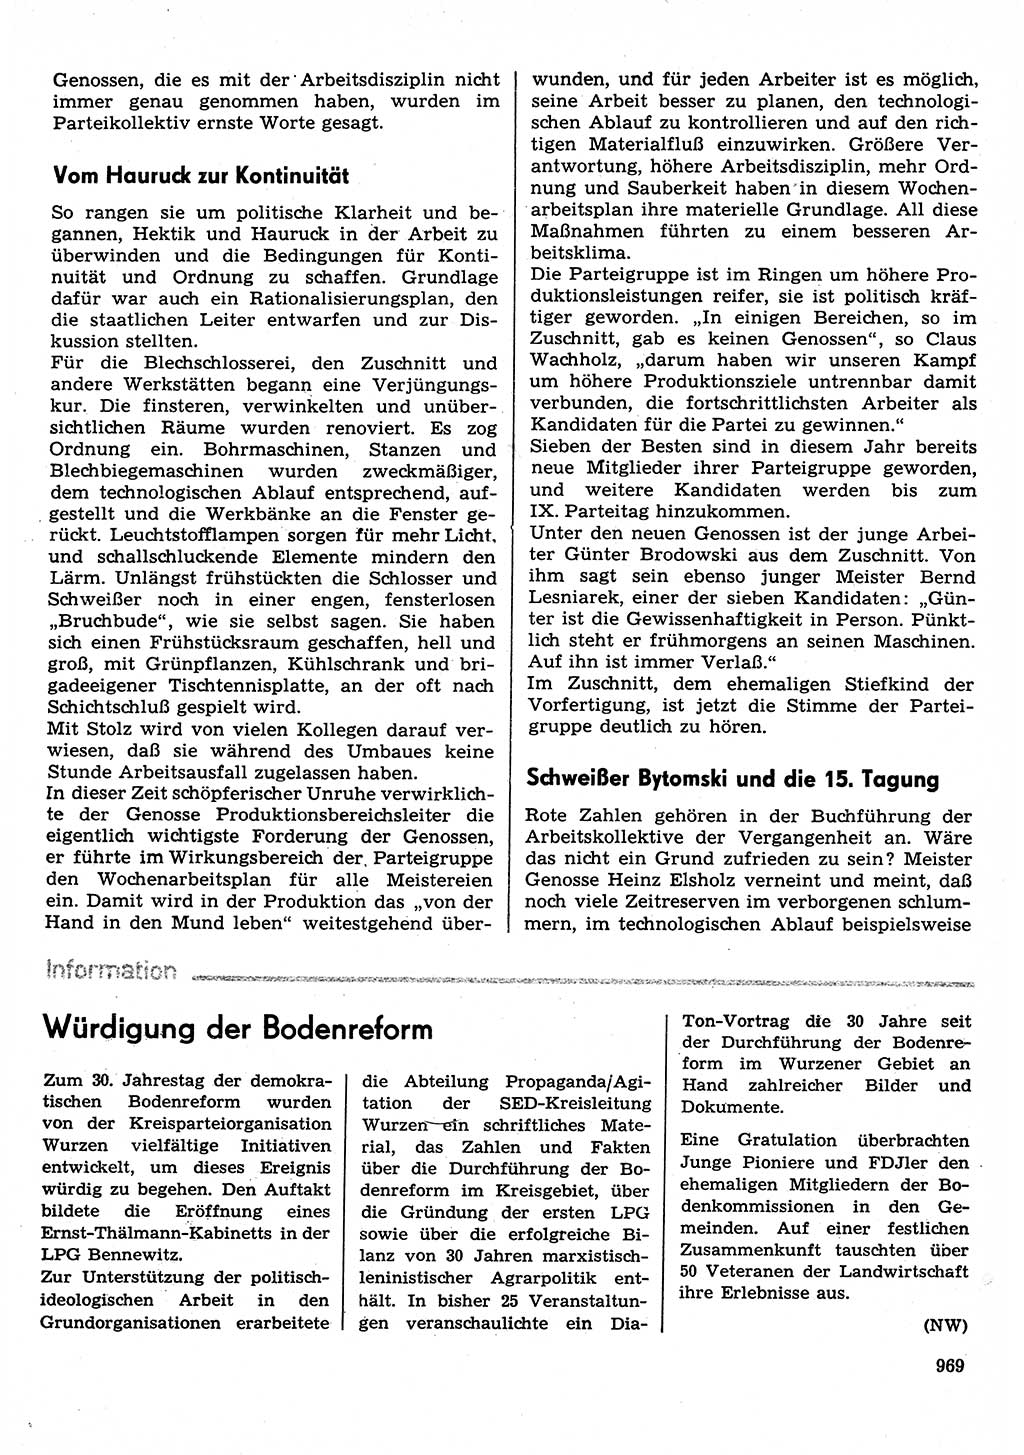 Neuer Weg (NW), Organ des Zentralkomitees (ZK) der SED (Sozialistische Einheitspartei Deutschlands) für Fragen des Parteilebens, 30. Jahrgang [Deutsche Demokratische Republik (DDR)] 1975, Seite 969 (NW ZK SED DDR 1975, S. 969)